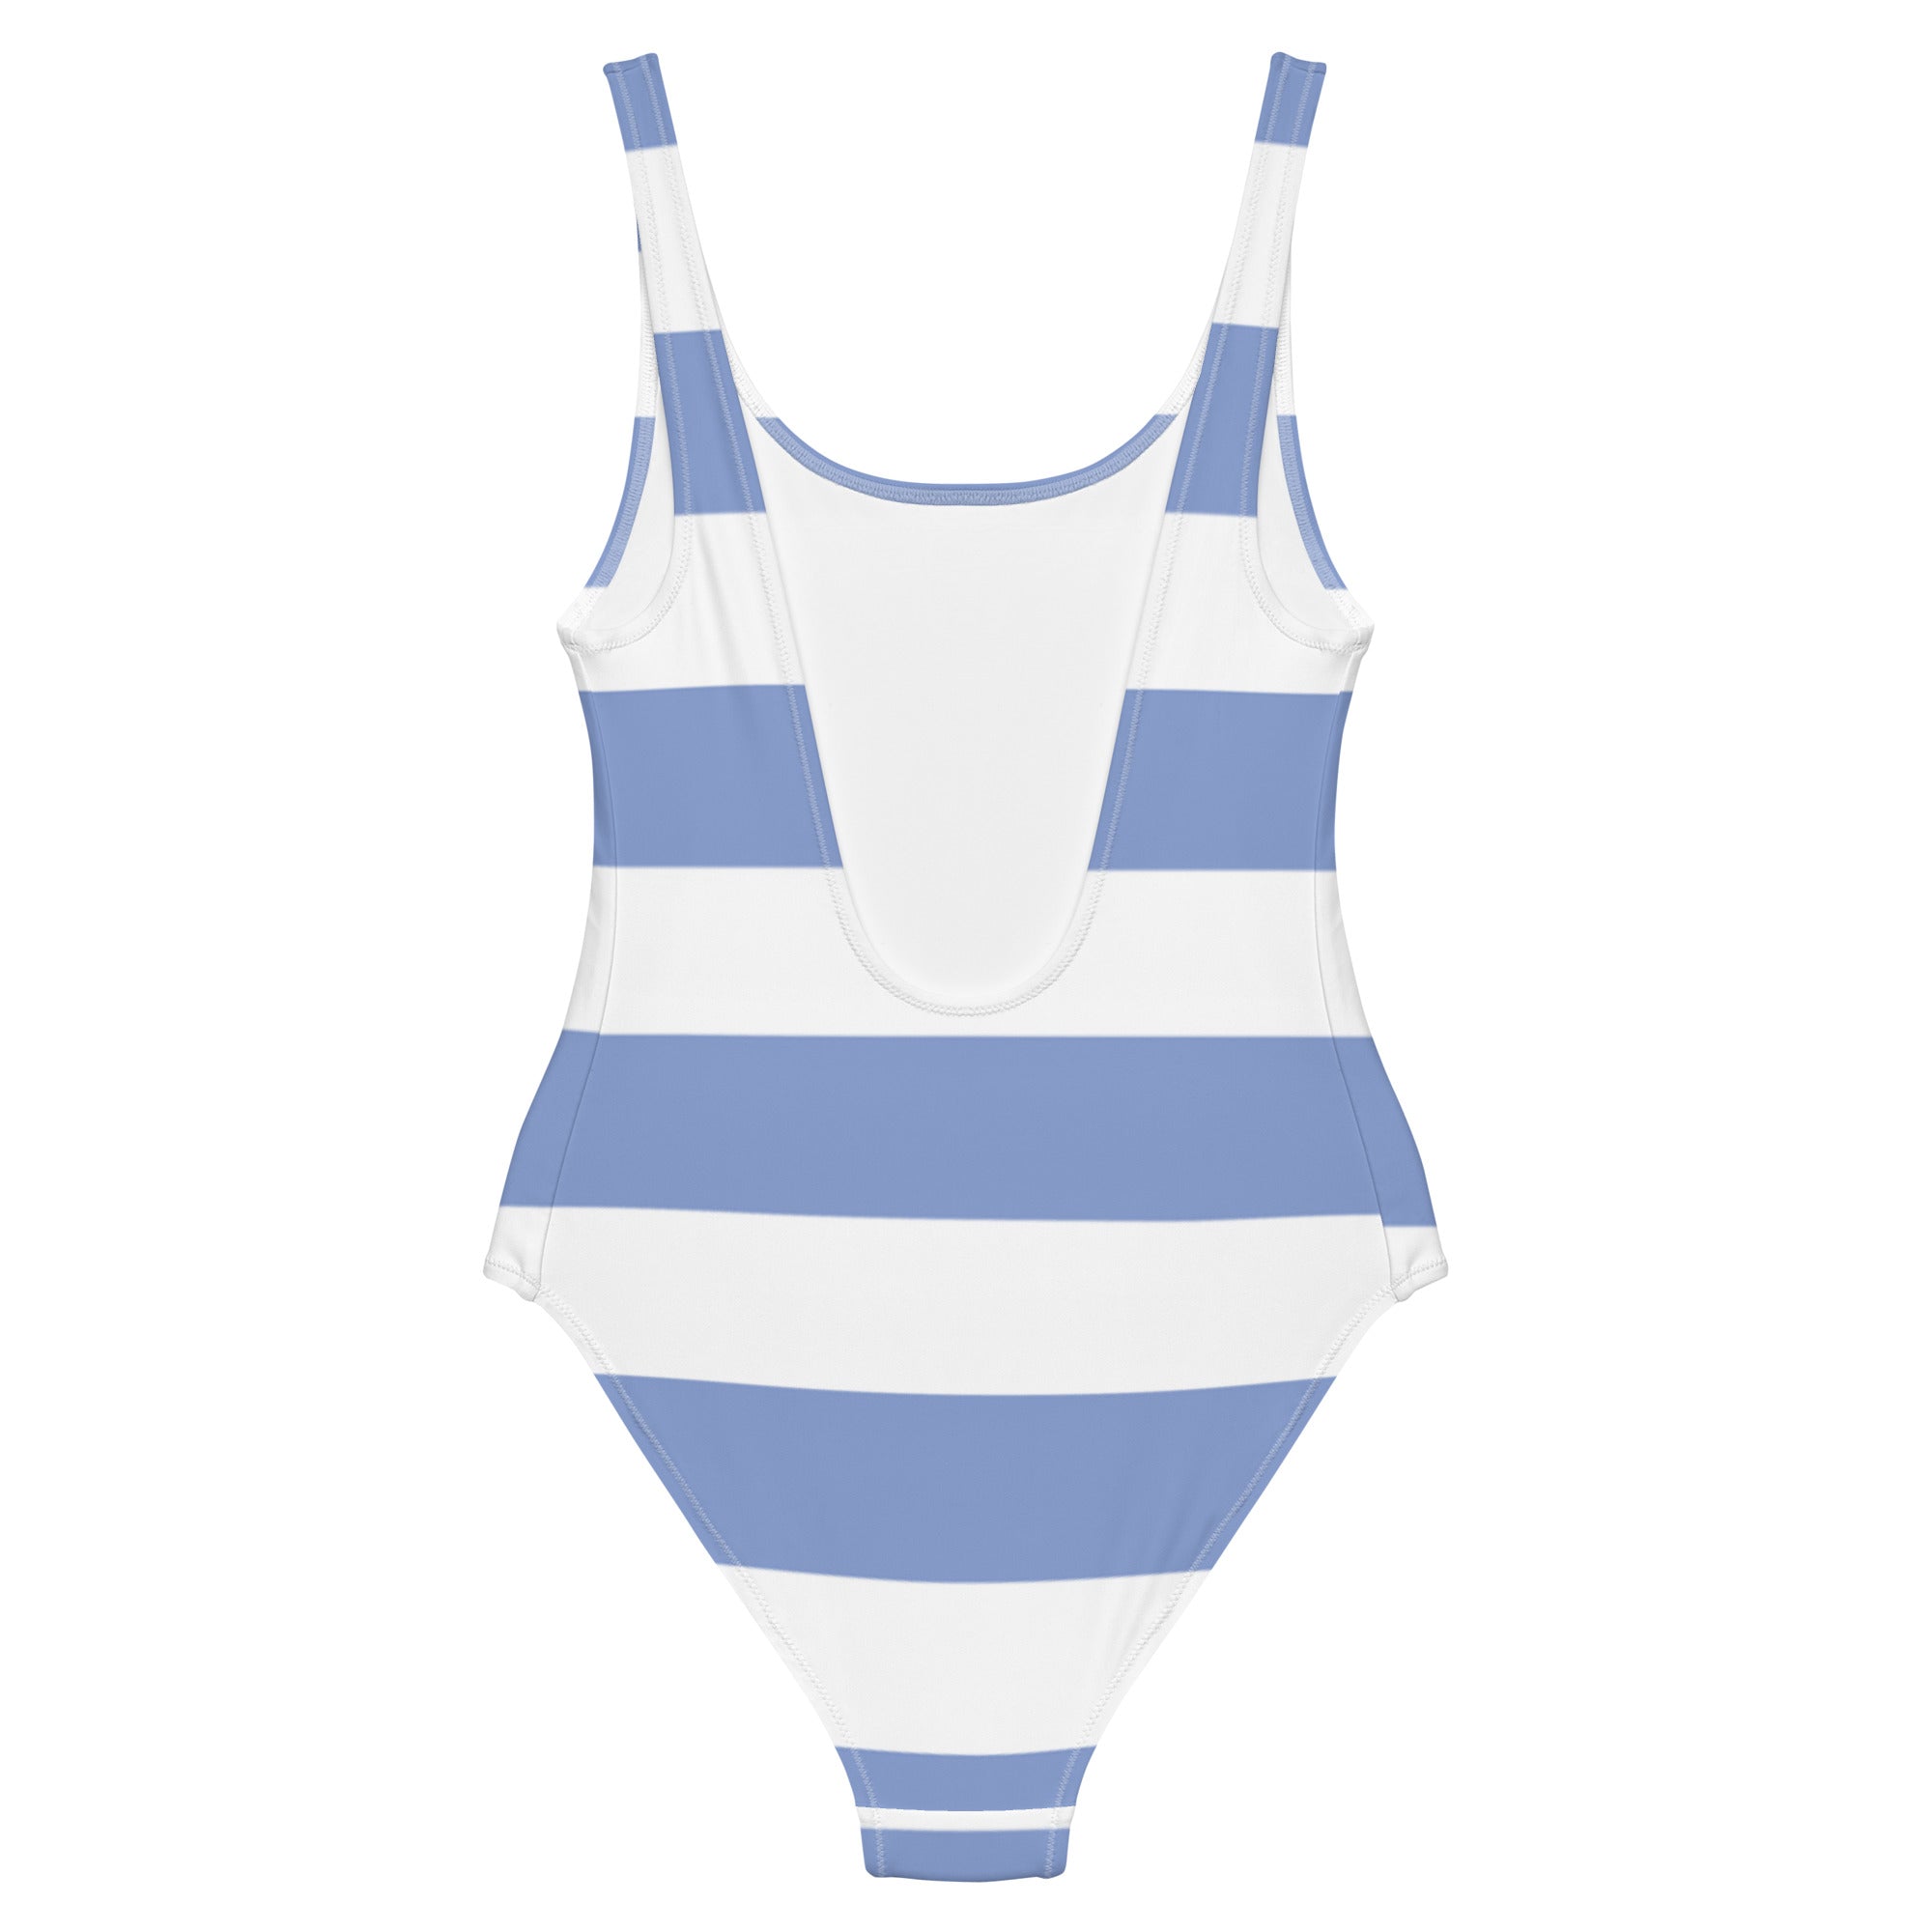 White & blue strip swimsuit for women